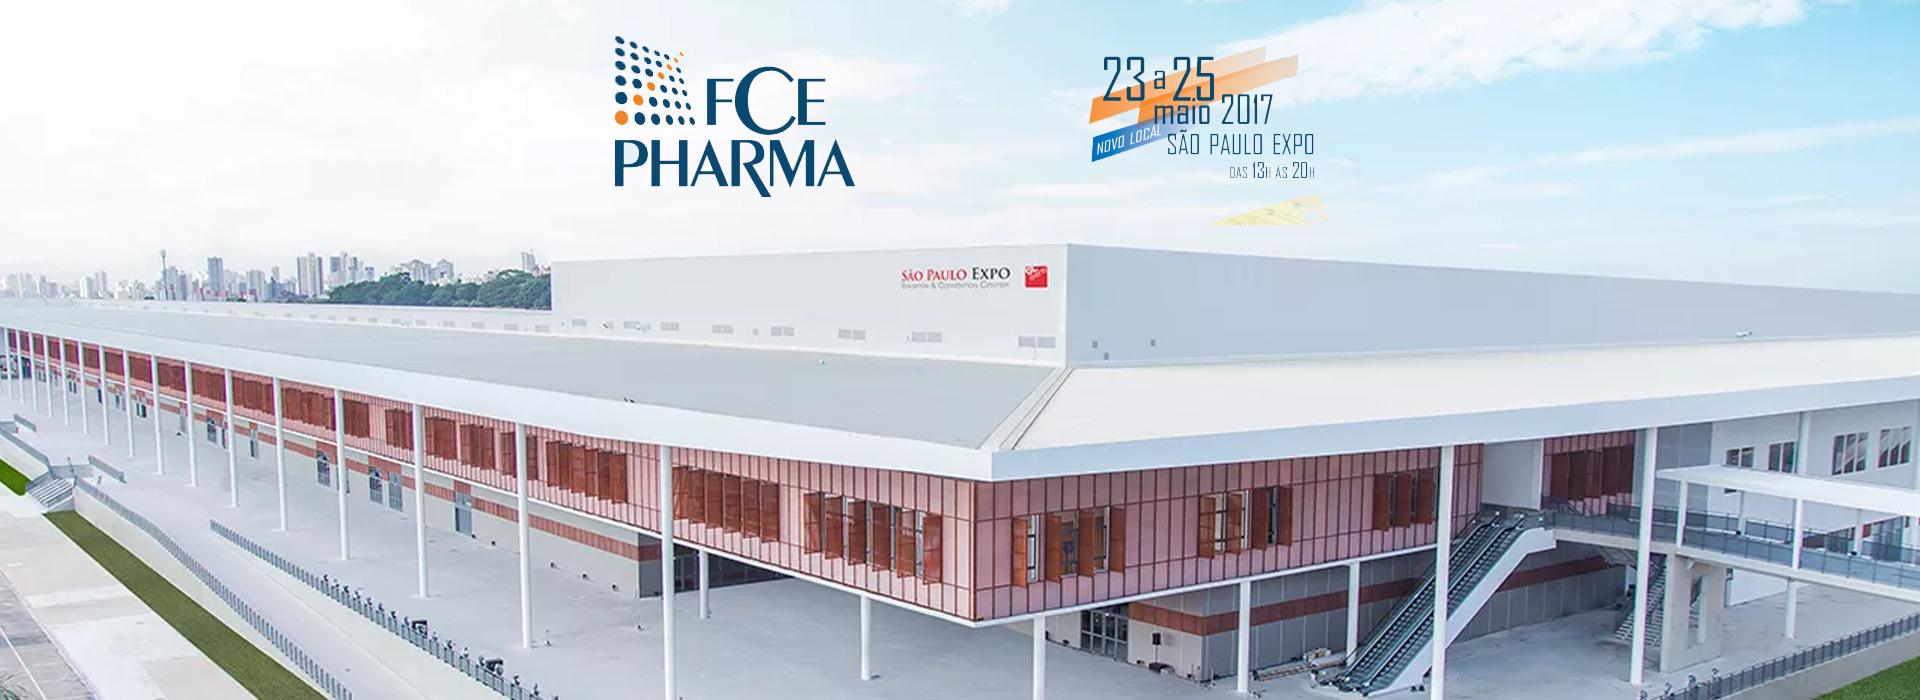 Estaremos presentes na FCE Pharma 2017!